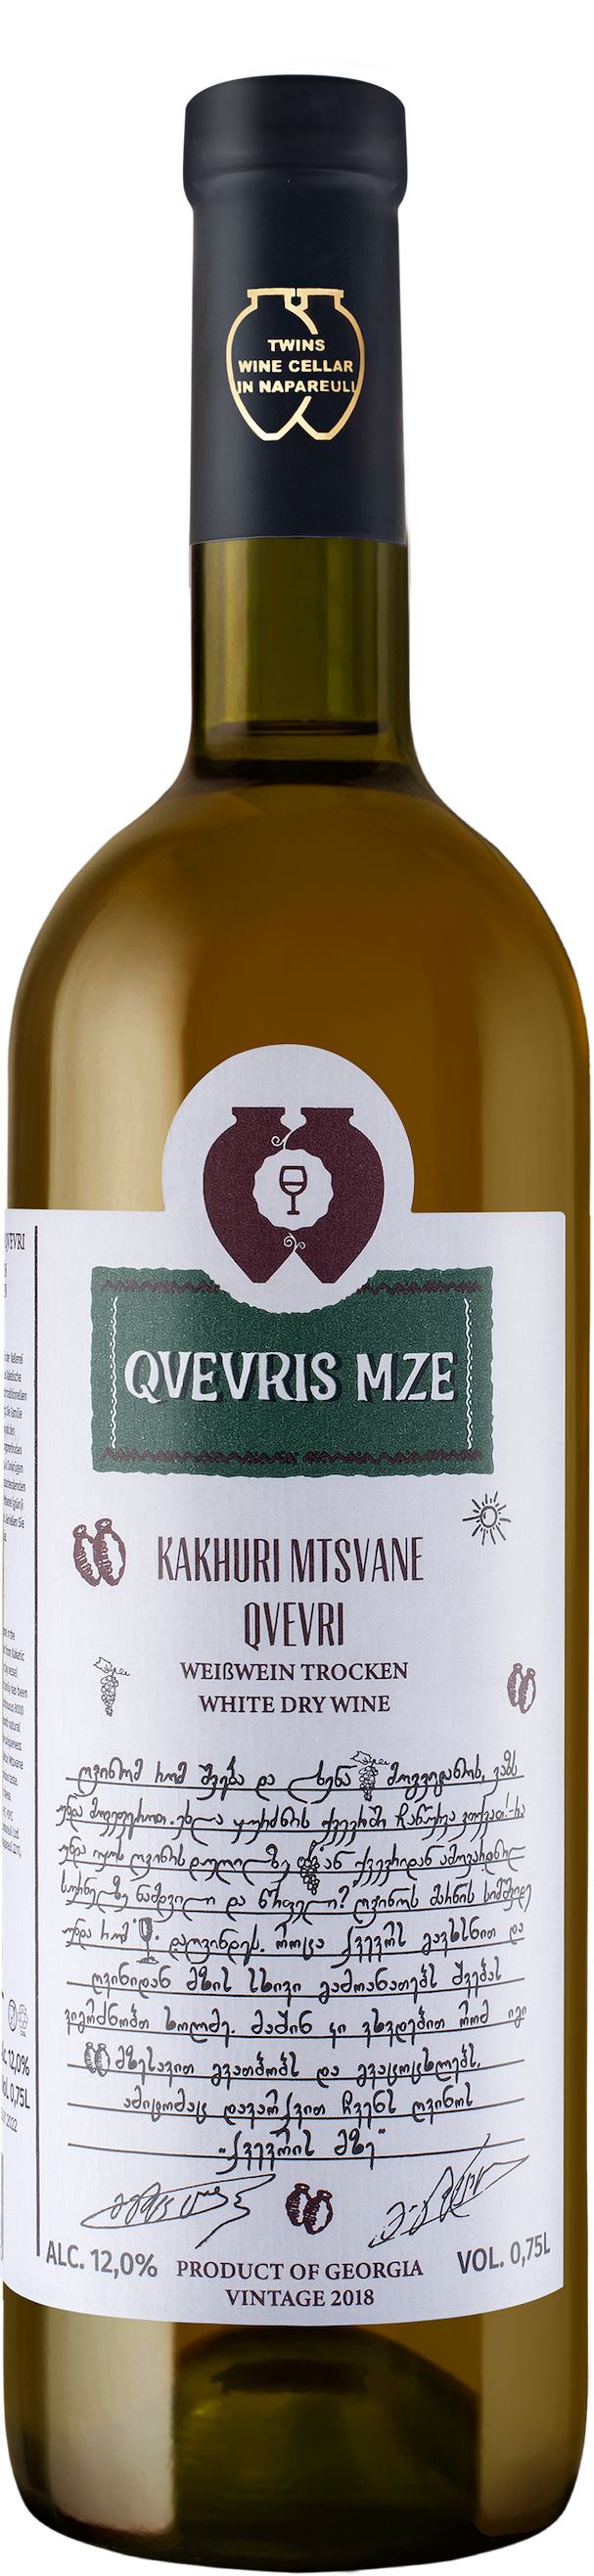 Weinhaus Qvevri Weine - Georgisches